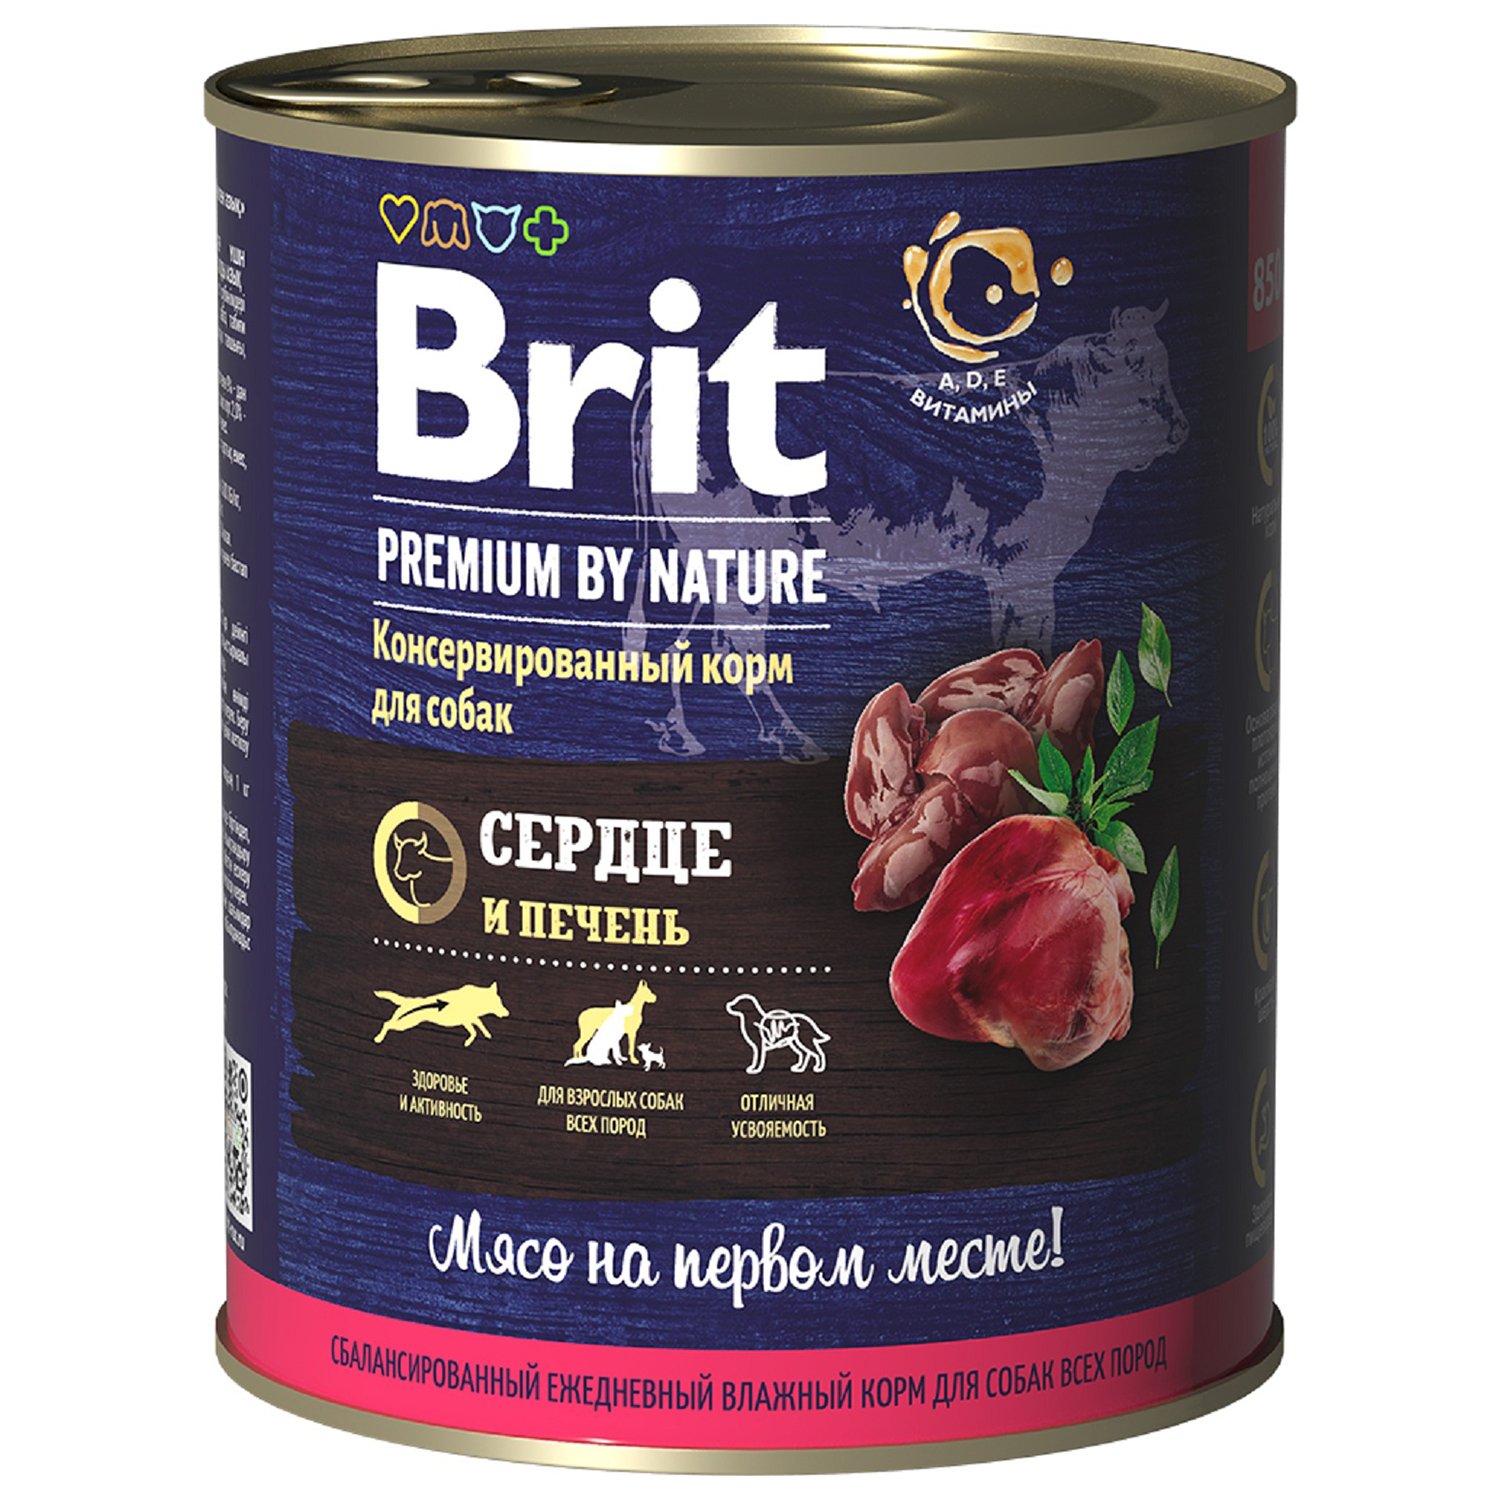 Корм для собак Brit 850г Premium by Nature с сердцем и печенью консервированный - фото 1